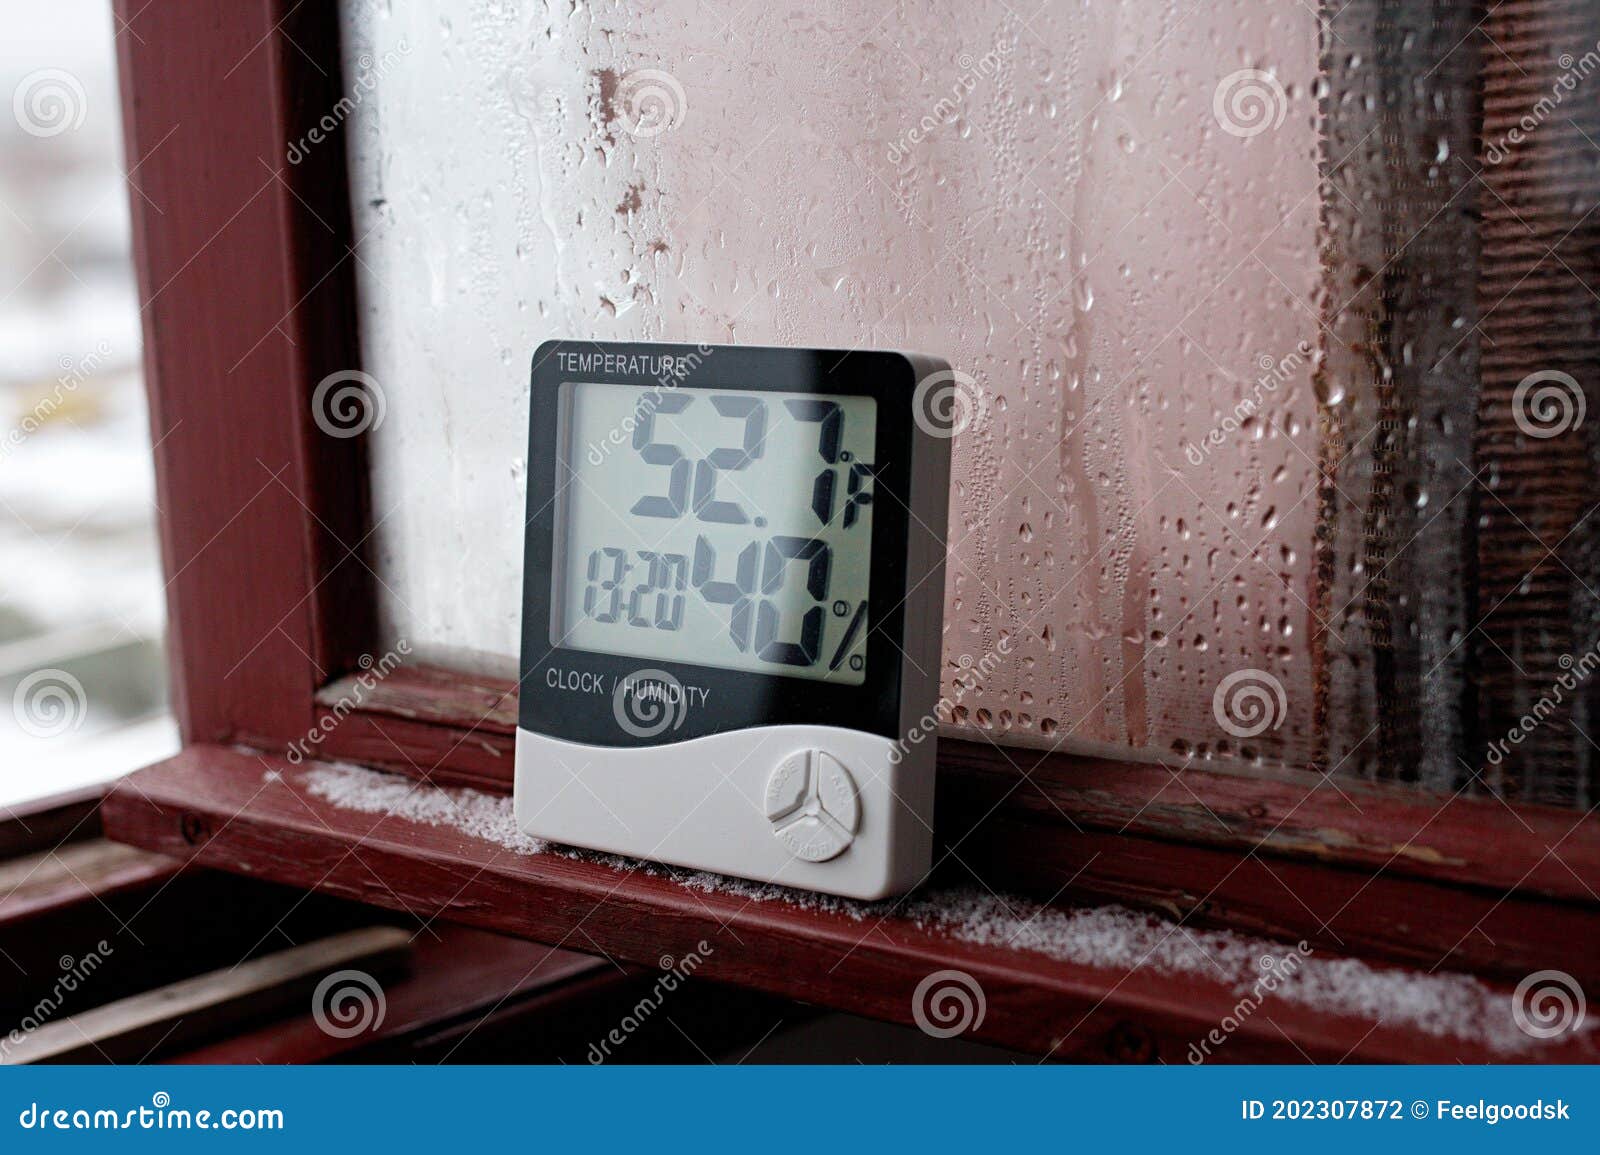 Thermomètre Infrarouge, Point de rosée/Temp/humidité